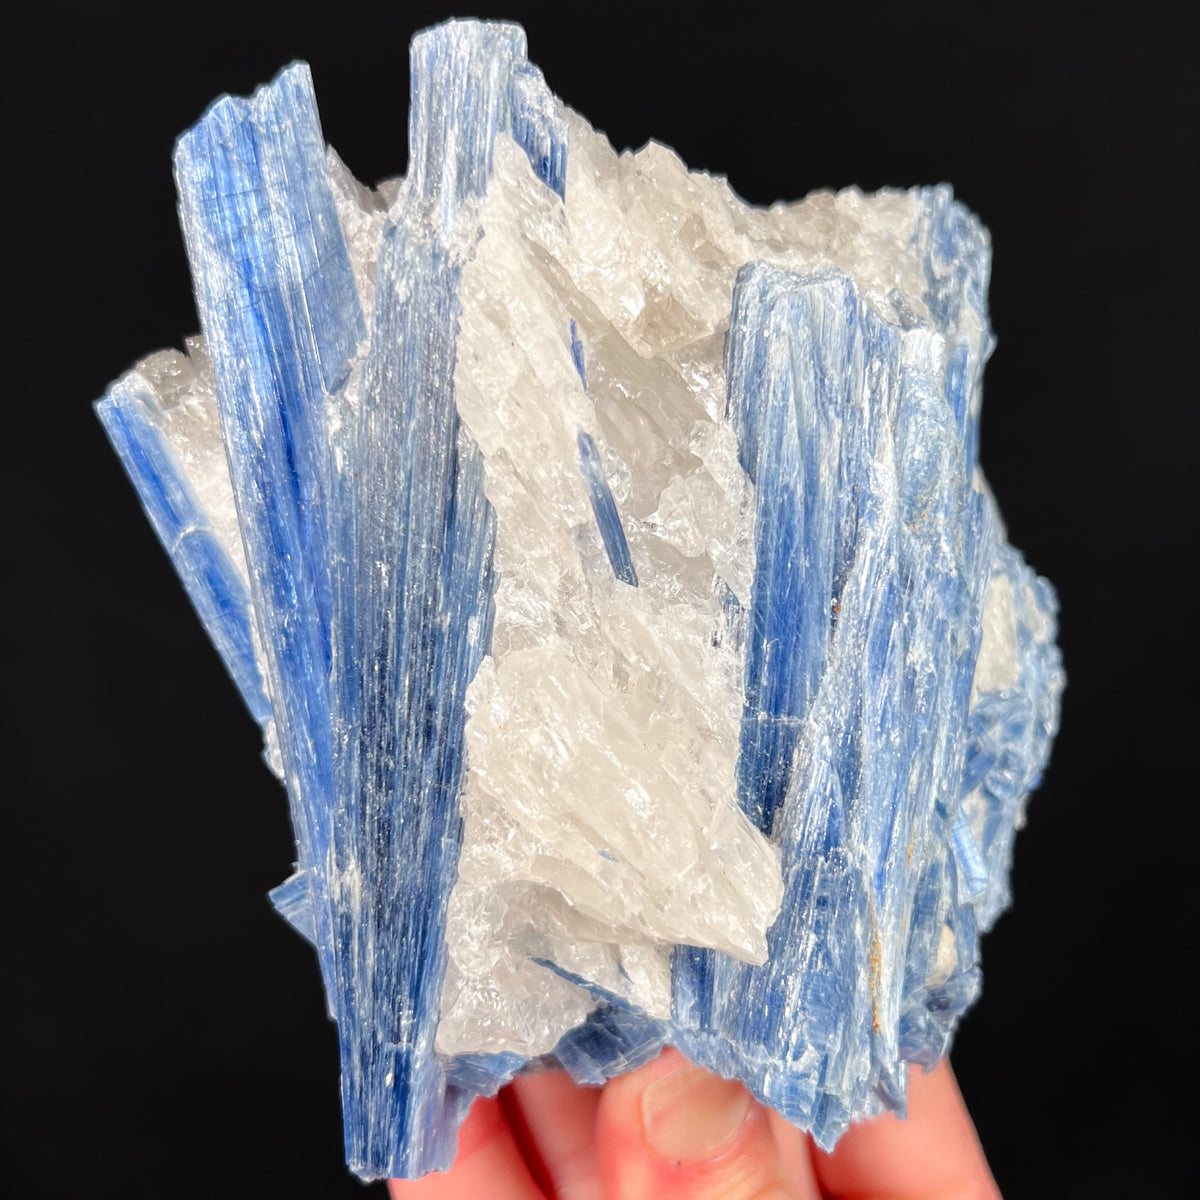 Large Blue Kyanite Crystal Specimen